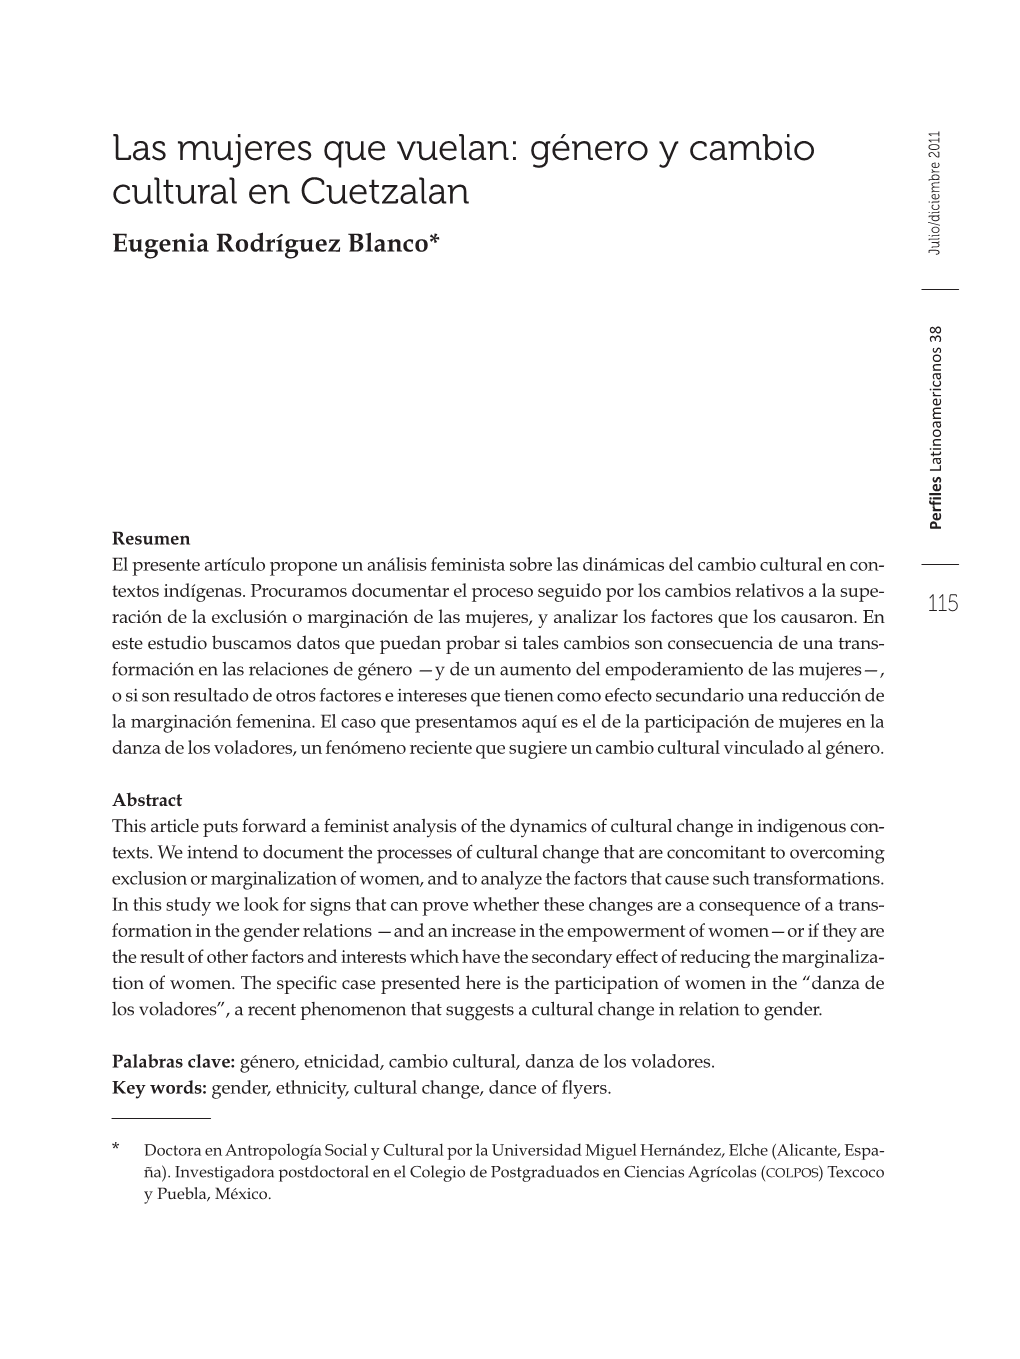 Las Mujeres Que Vuelan: Género Y Cambio Cultural En Cuetzalan